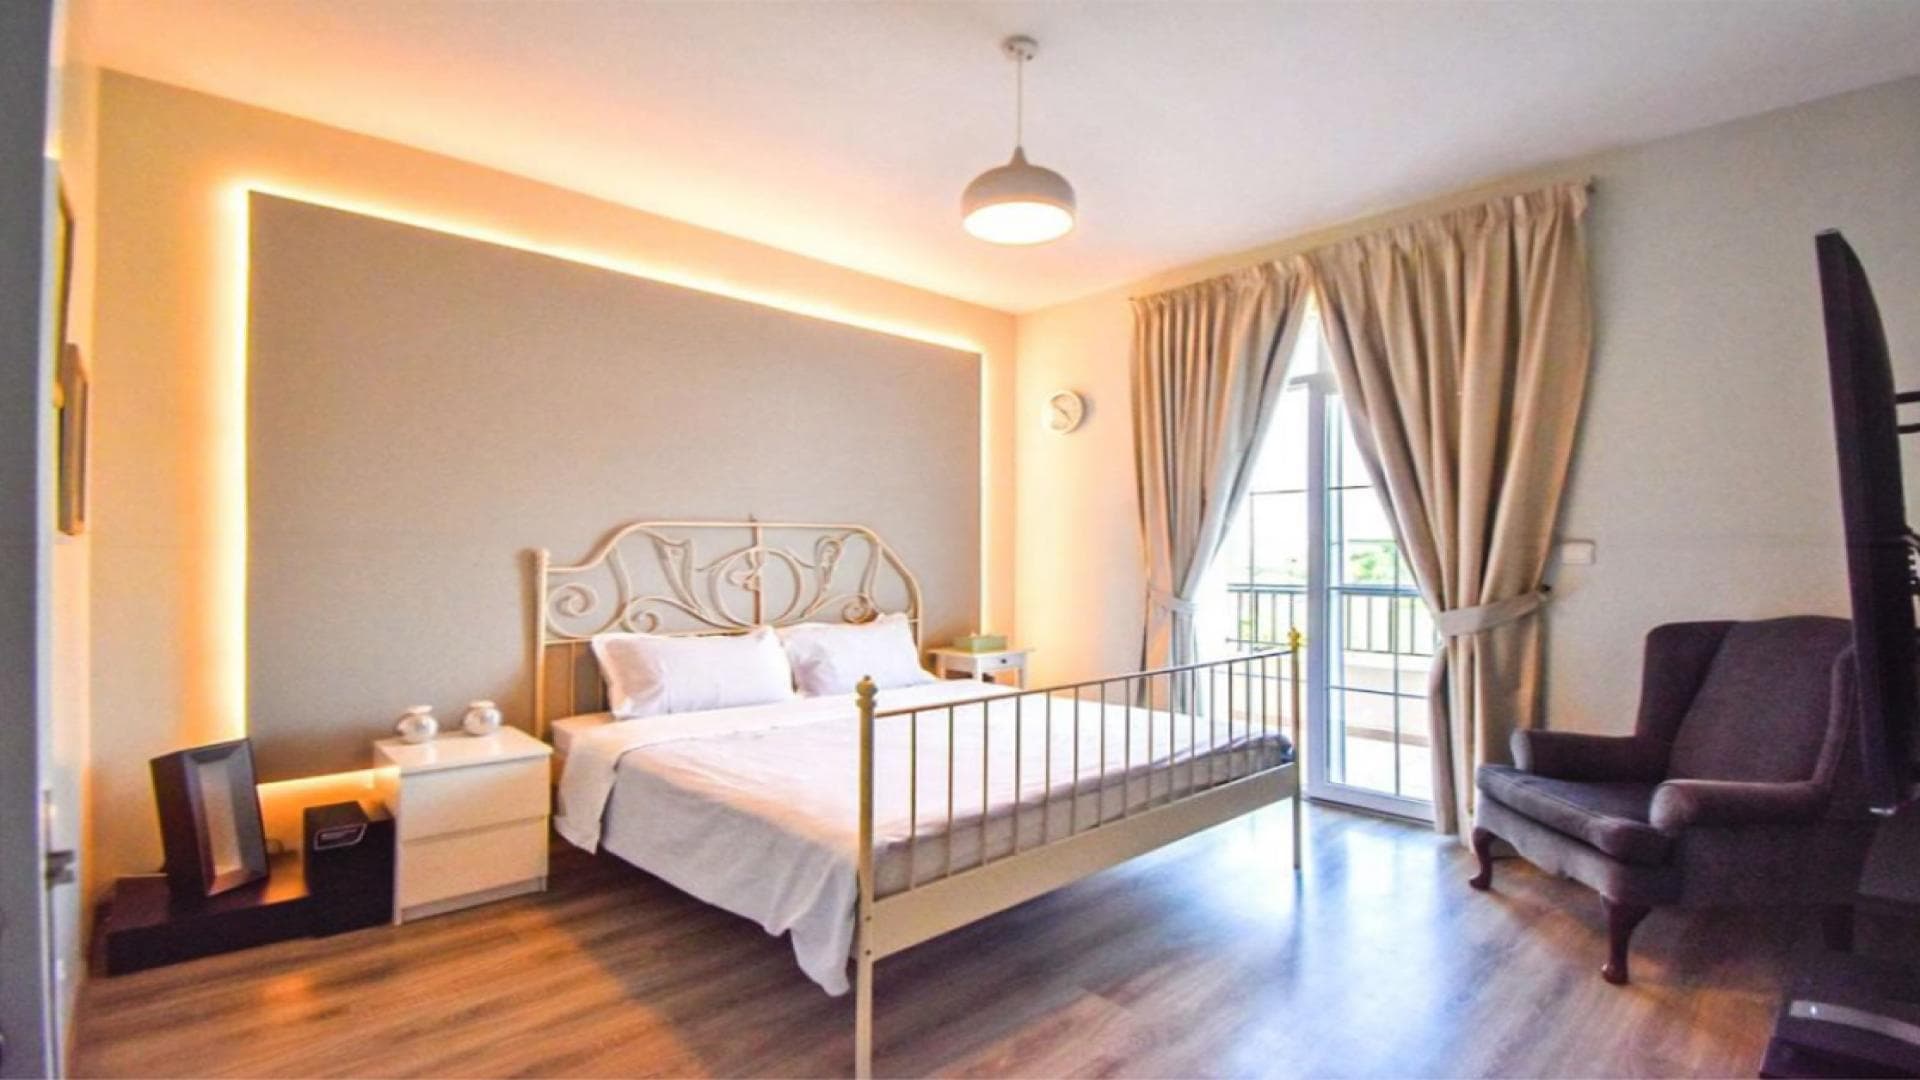 3 Bedroom Villa For Rent Block B Lp37409 2a2aa7b9f4da1600.jpg